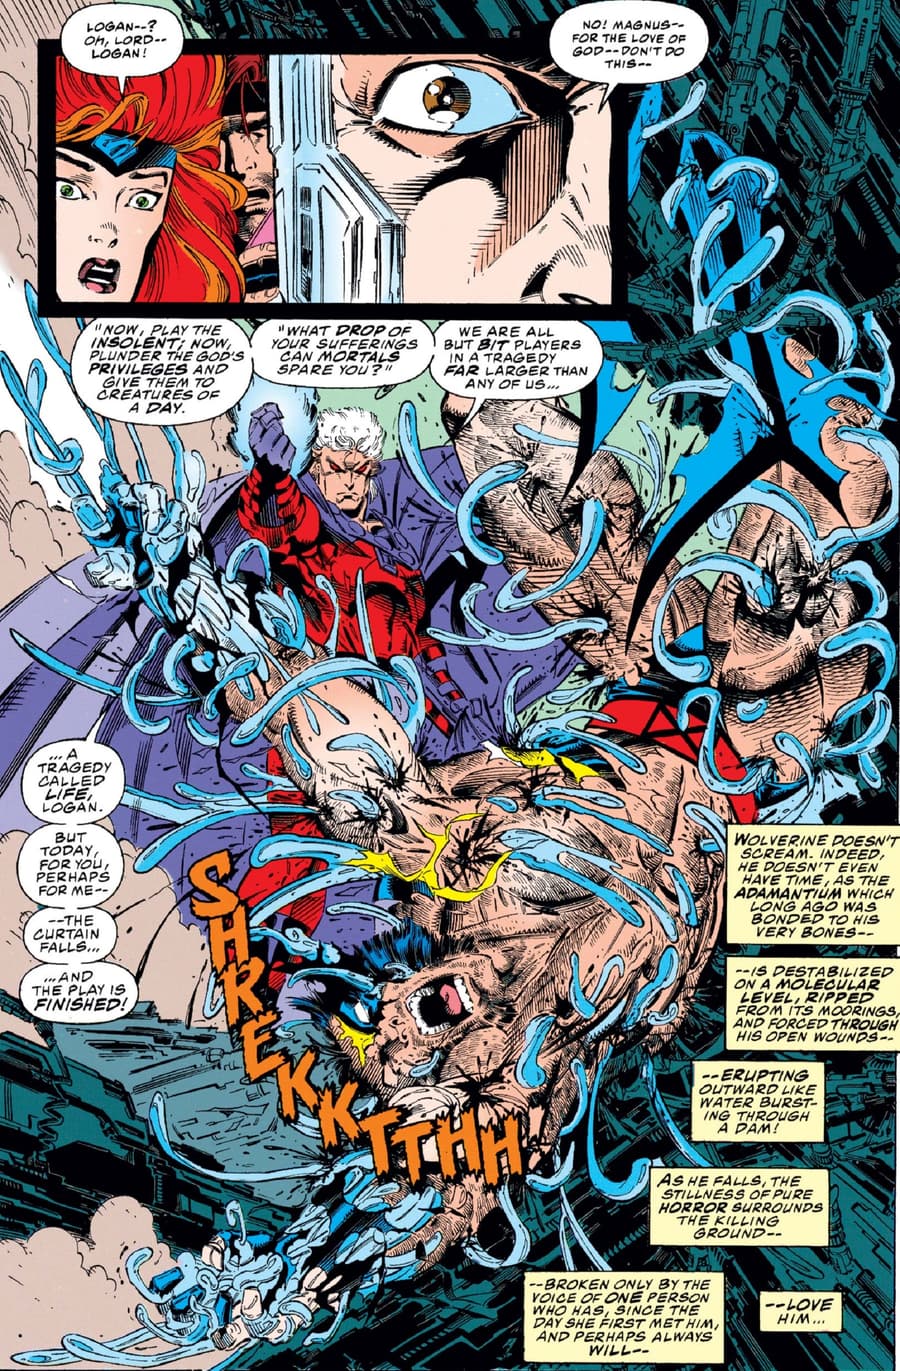 Wolverine loses his adamantium skeleton in X-MEN (1991) #25.